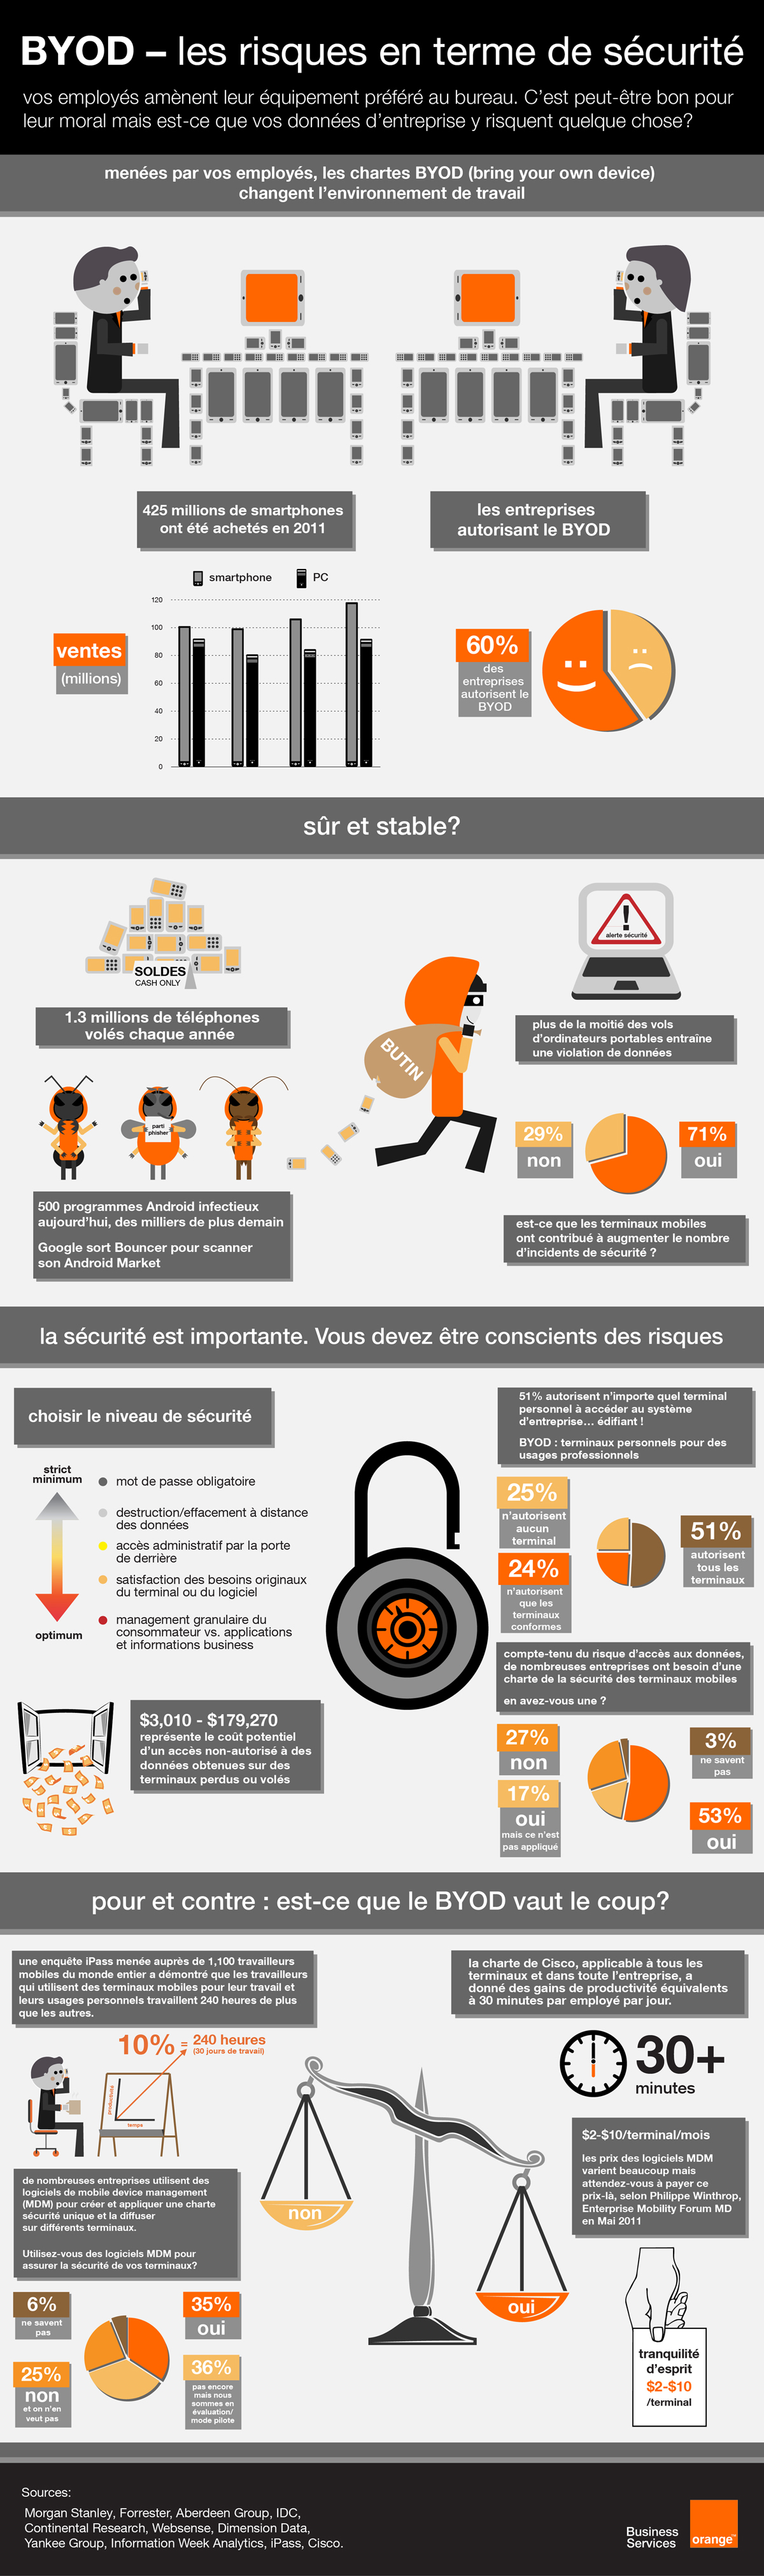 infographie : BYOD et les risques en terme de sécurité